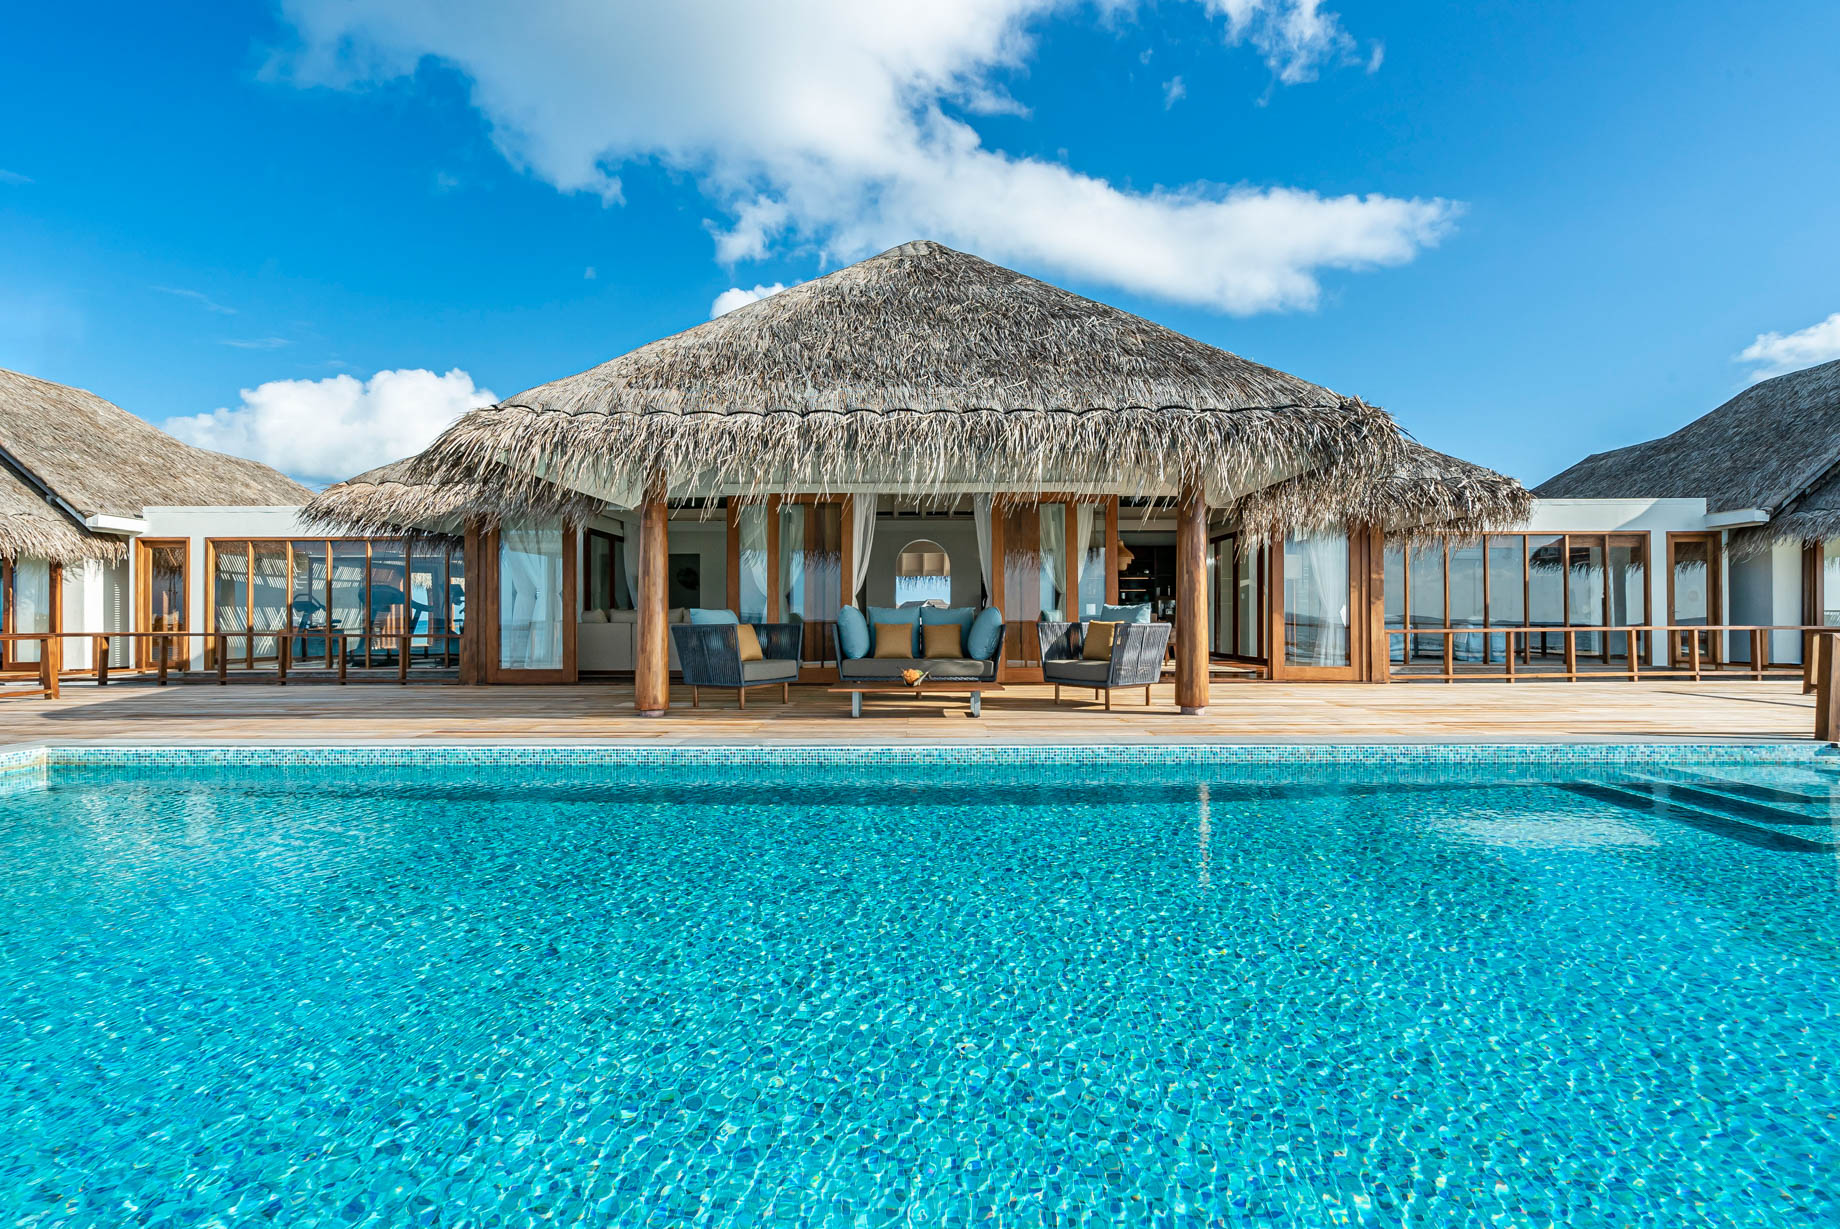 Anantara Kihavah Maldives Villas Resort – Baa Atoll, Maldives – Two Bedroom Sunset Over Water Pool Residence Pool View